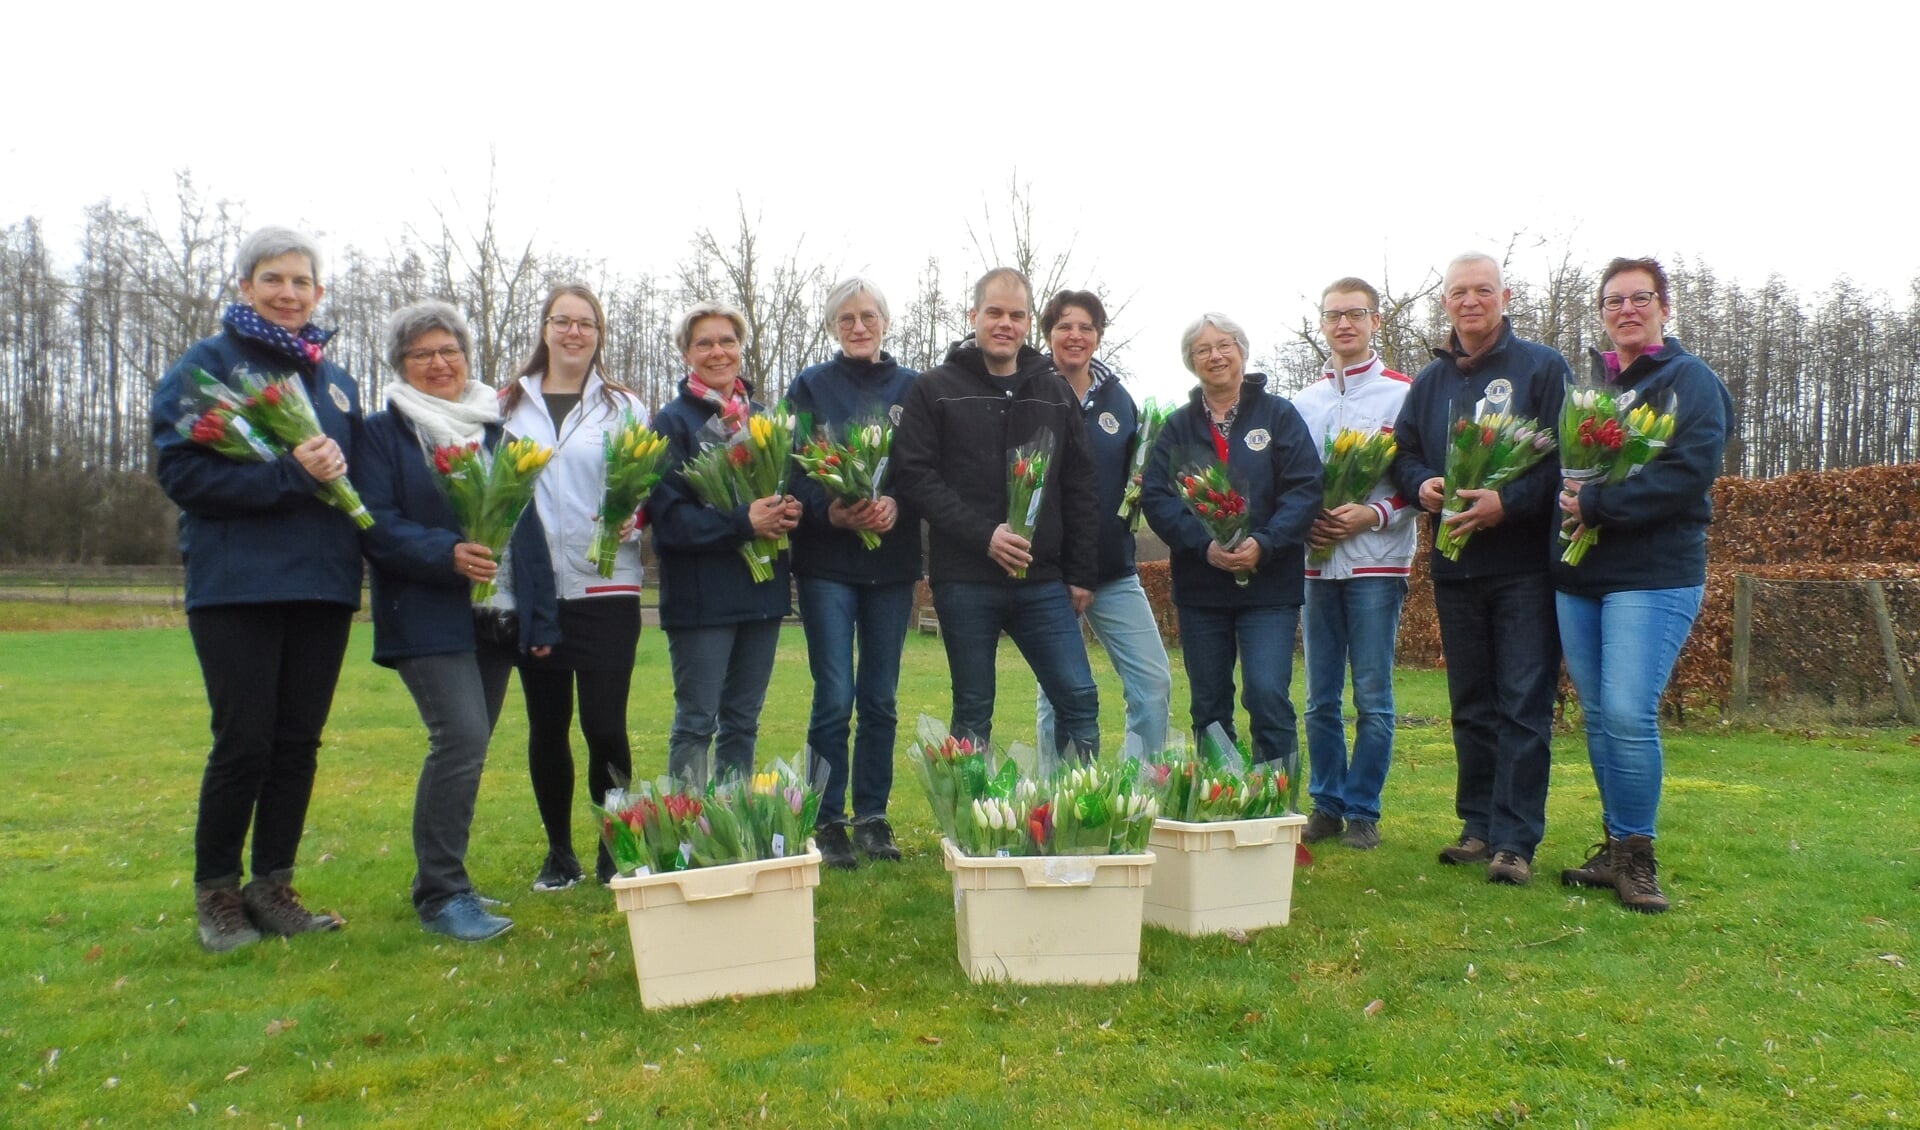 Leden van de Lionsclub gaat weer aan de deur tulpen verkopen. Foto: Lionsclub Bronckhorst